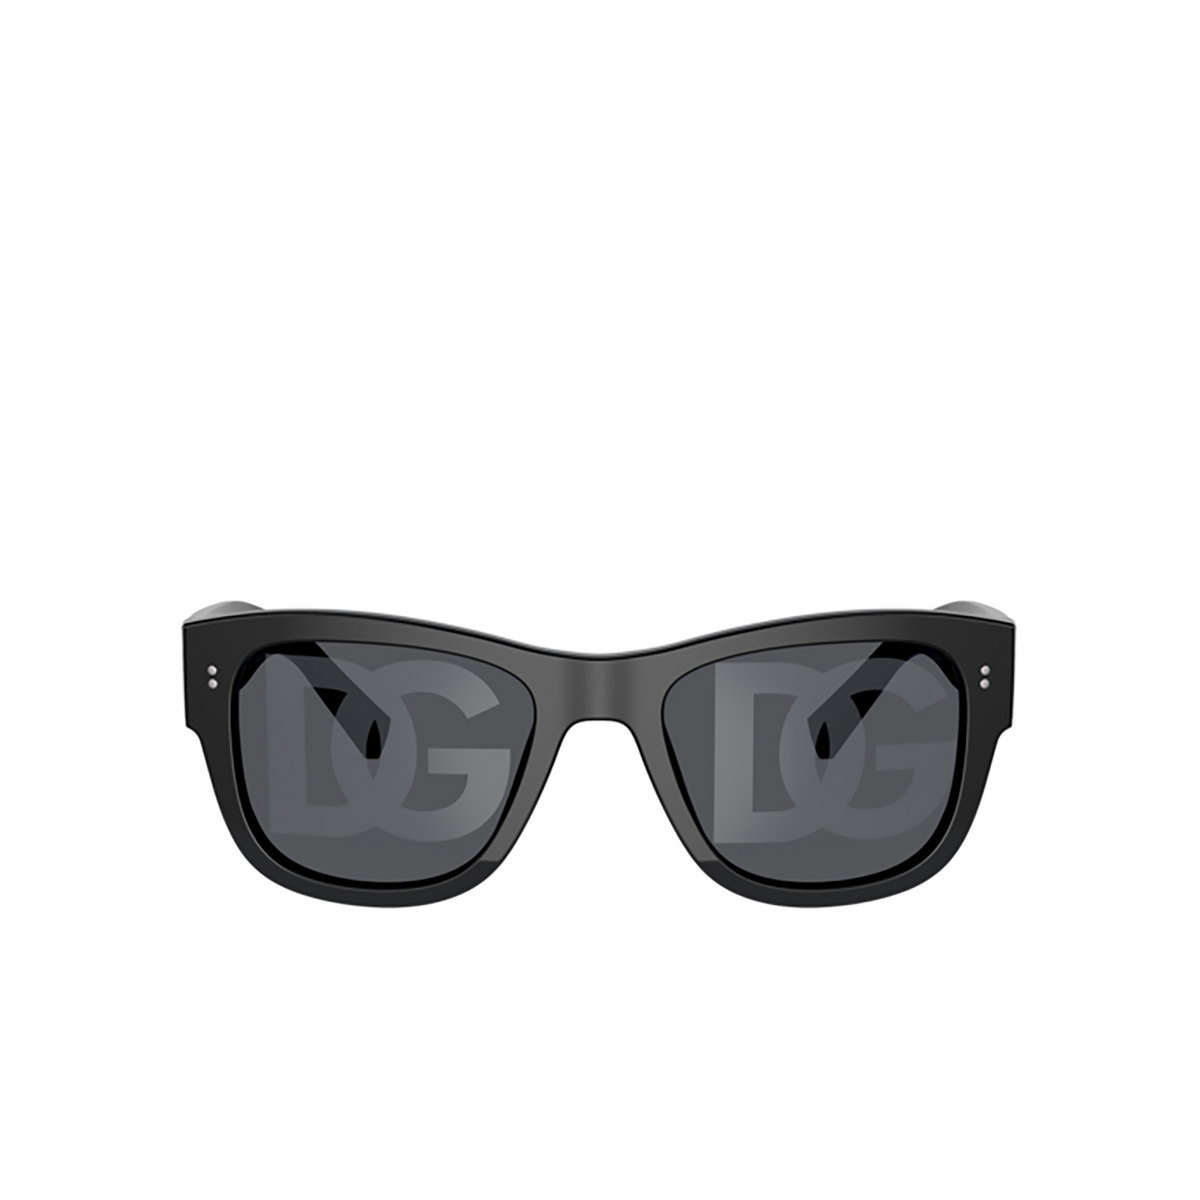 Dolce & Gabbana DG4338 Sunglasses 501/M Black - front view